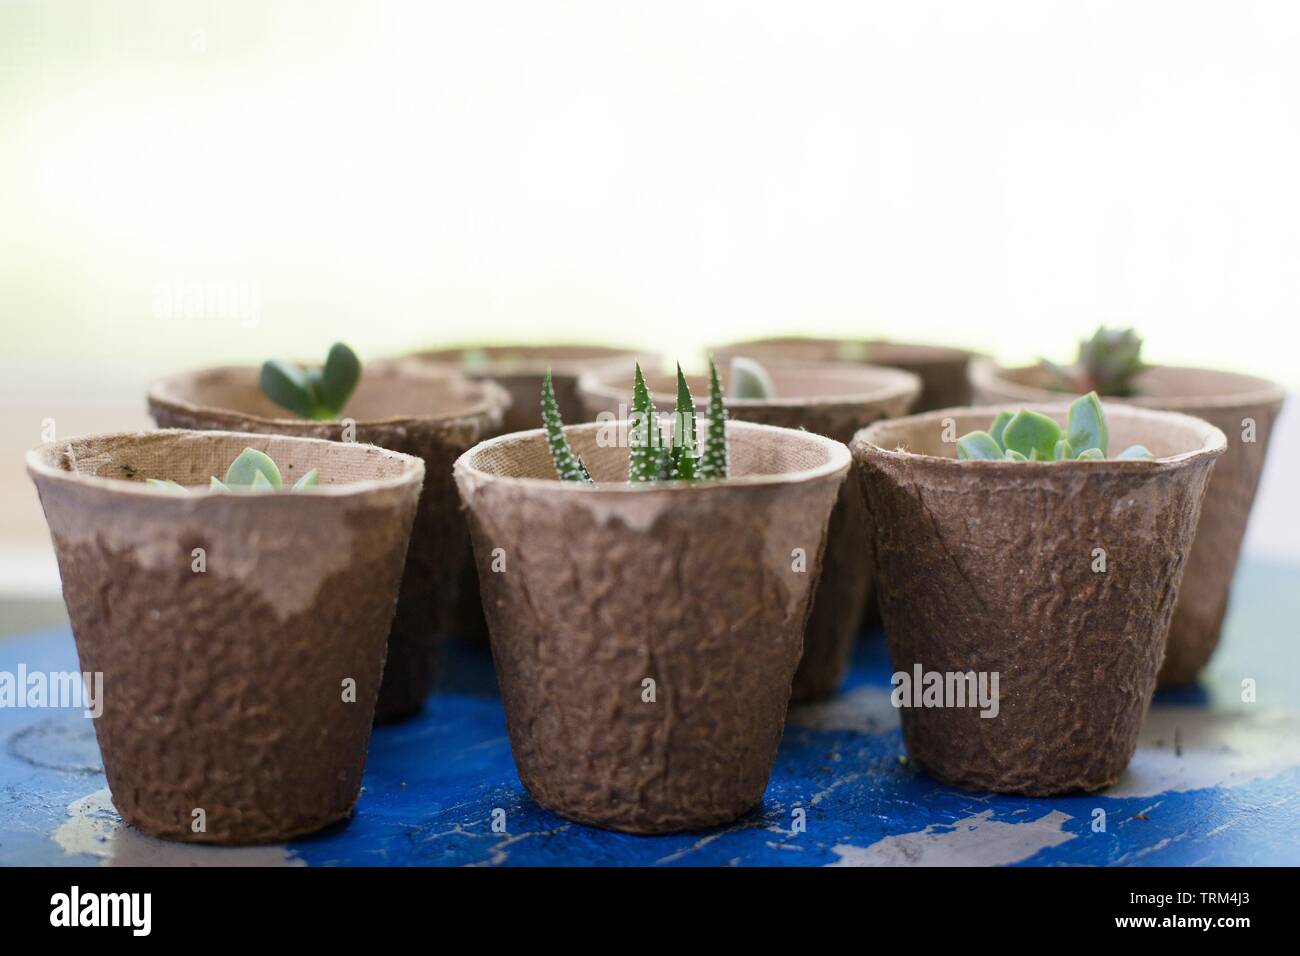 Boutures de plantes succulentes propagée plantés dans des contenants de papier biodégradable. Banque D'Images